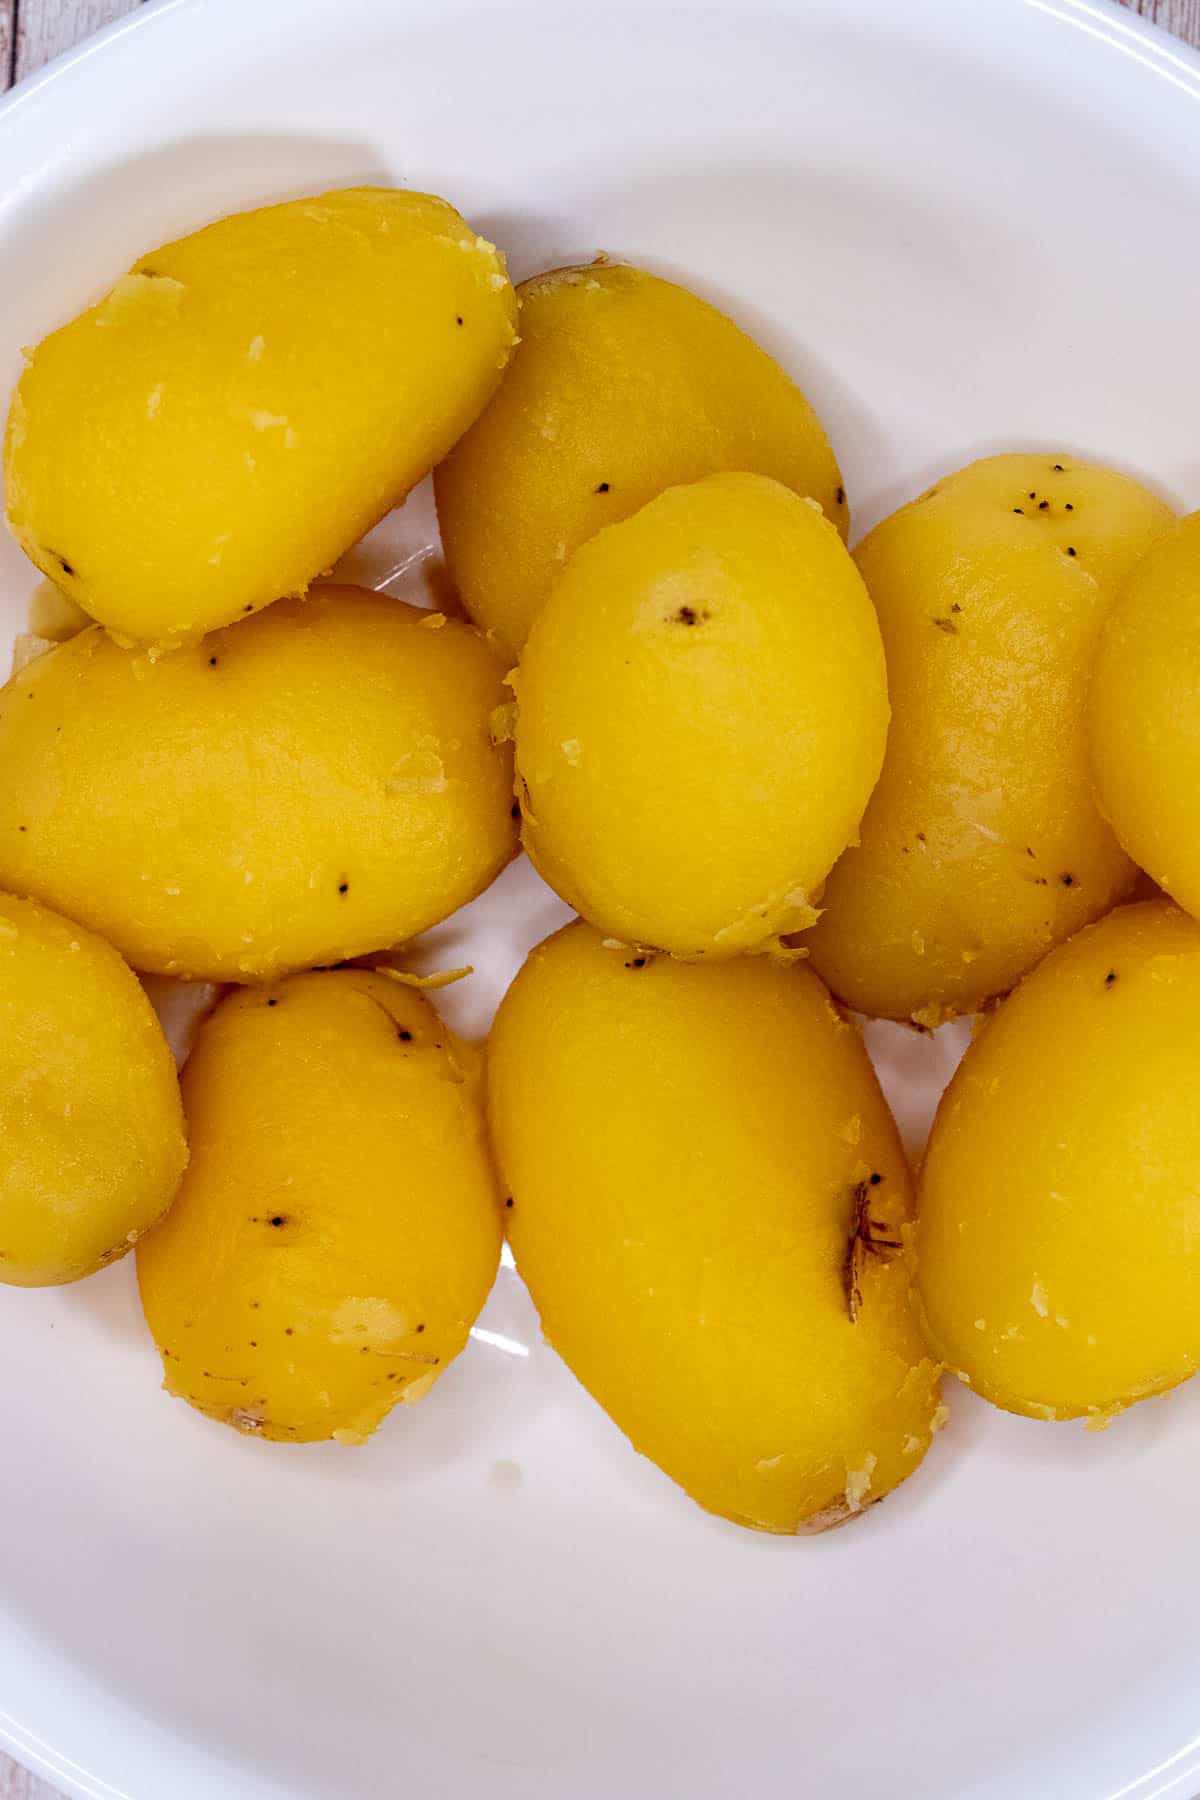 Par-boiled potatoes peeled.